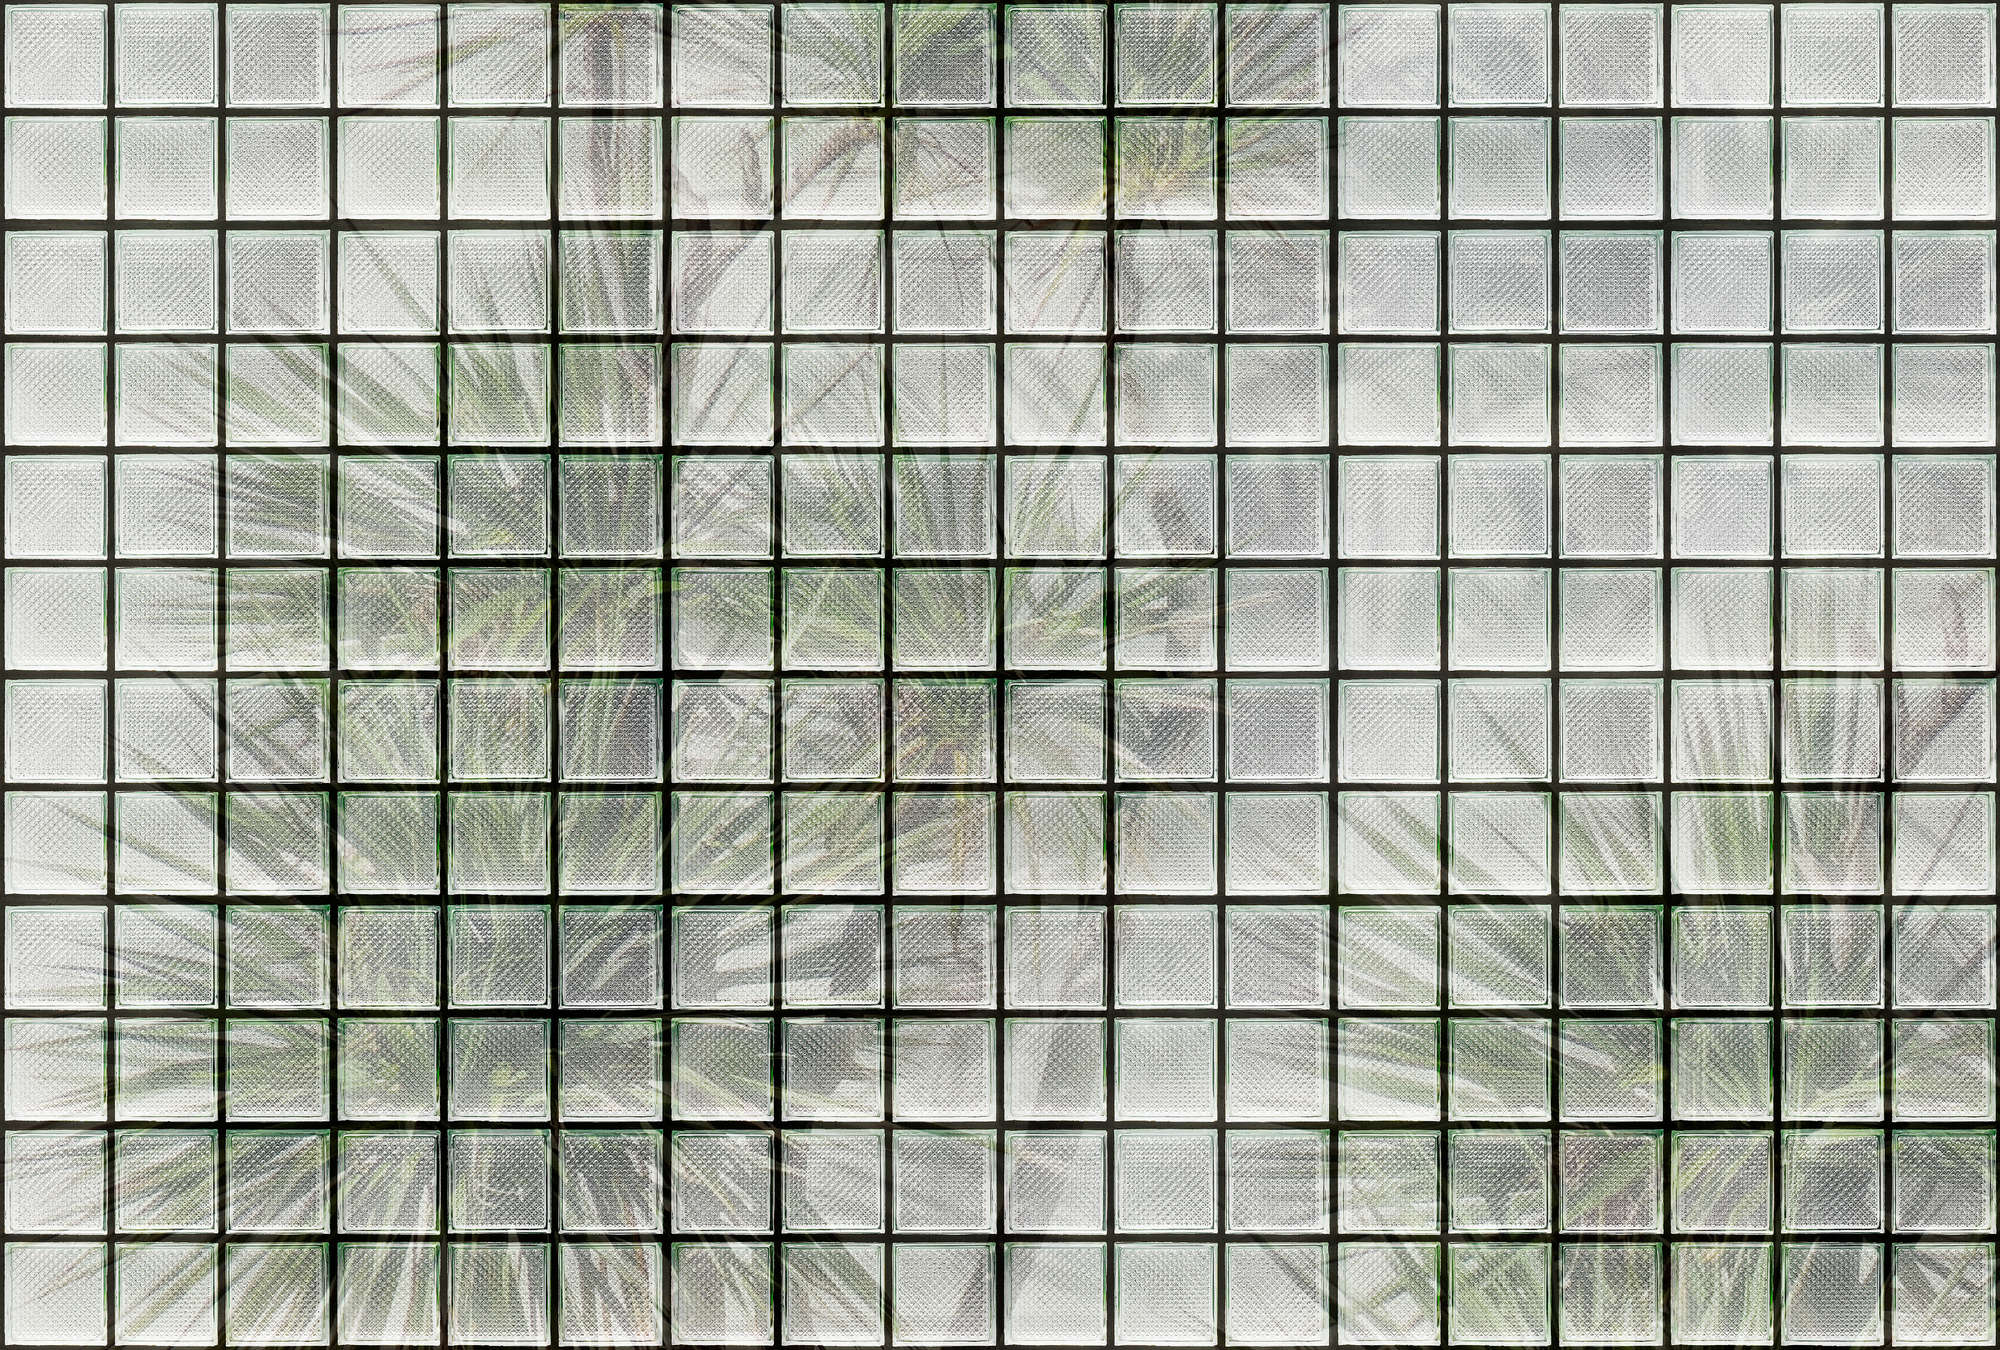             Casa Verde 1 - Mural de pared Palmeras y bloques de vidrio
        